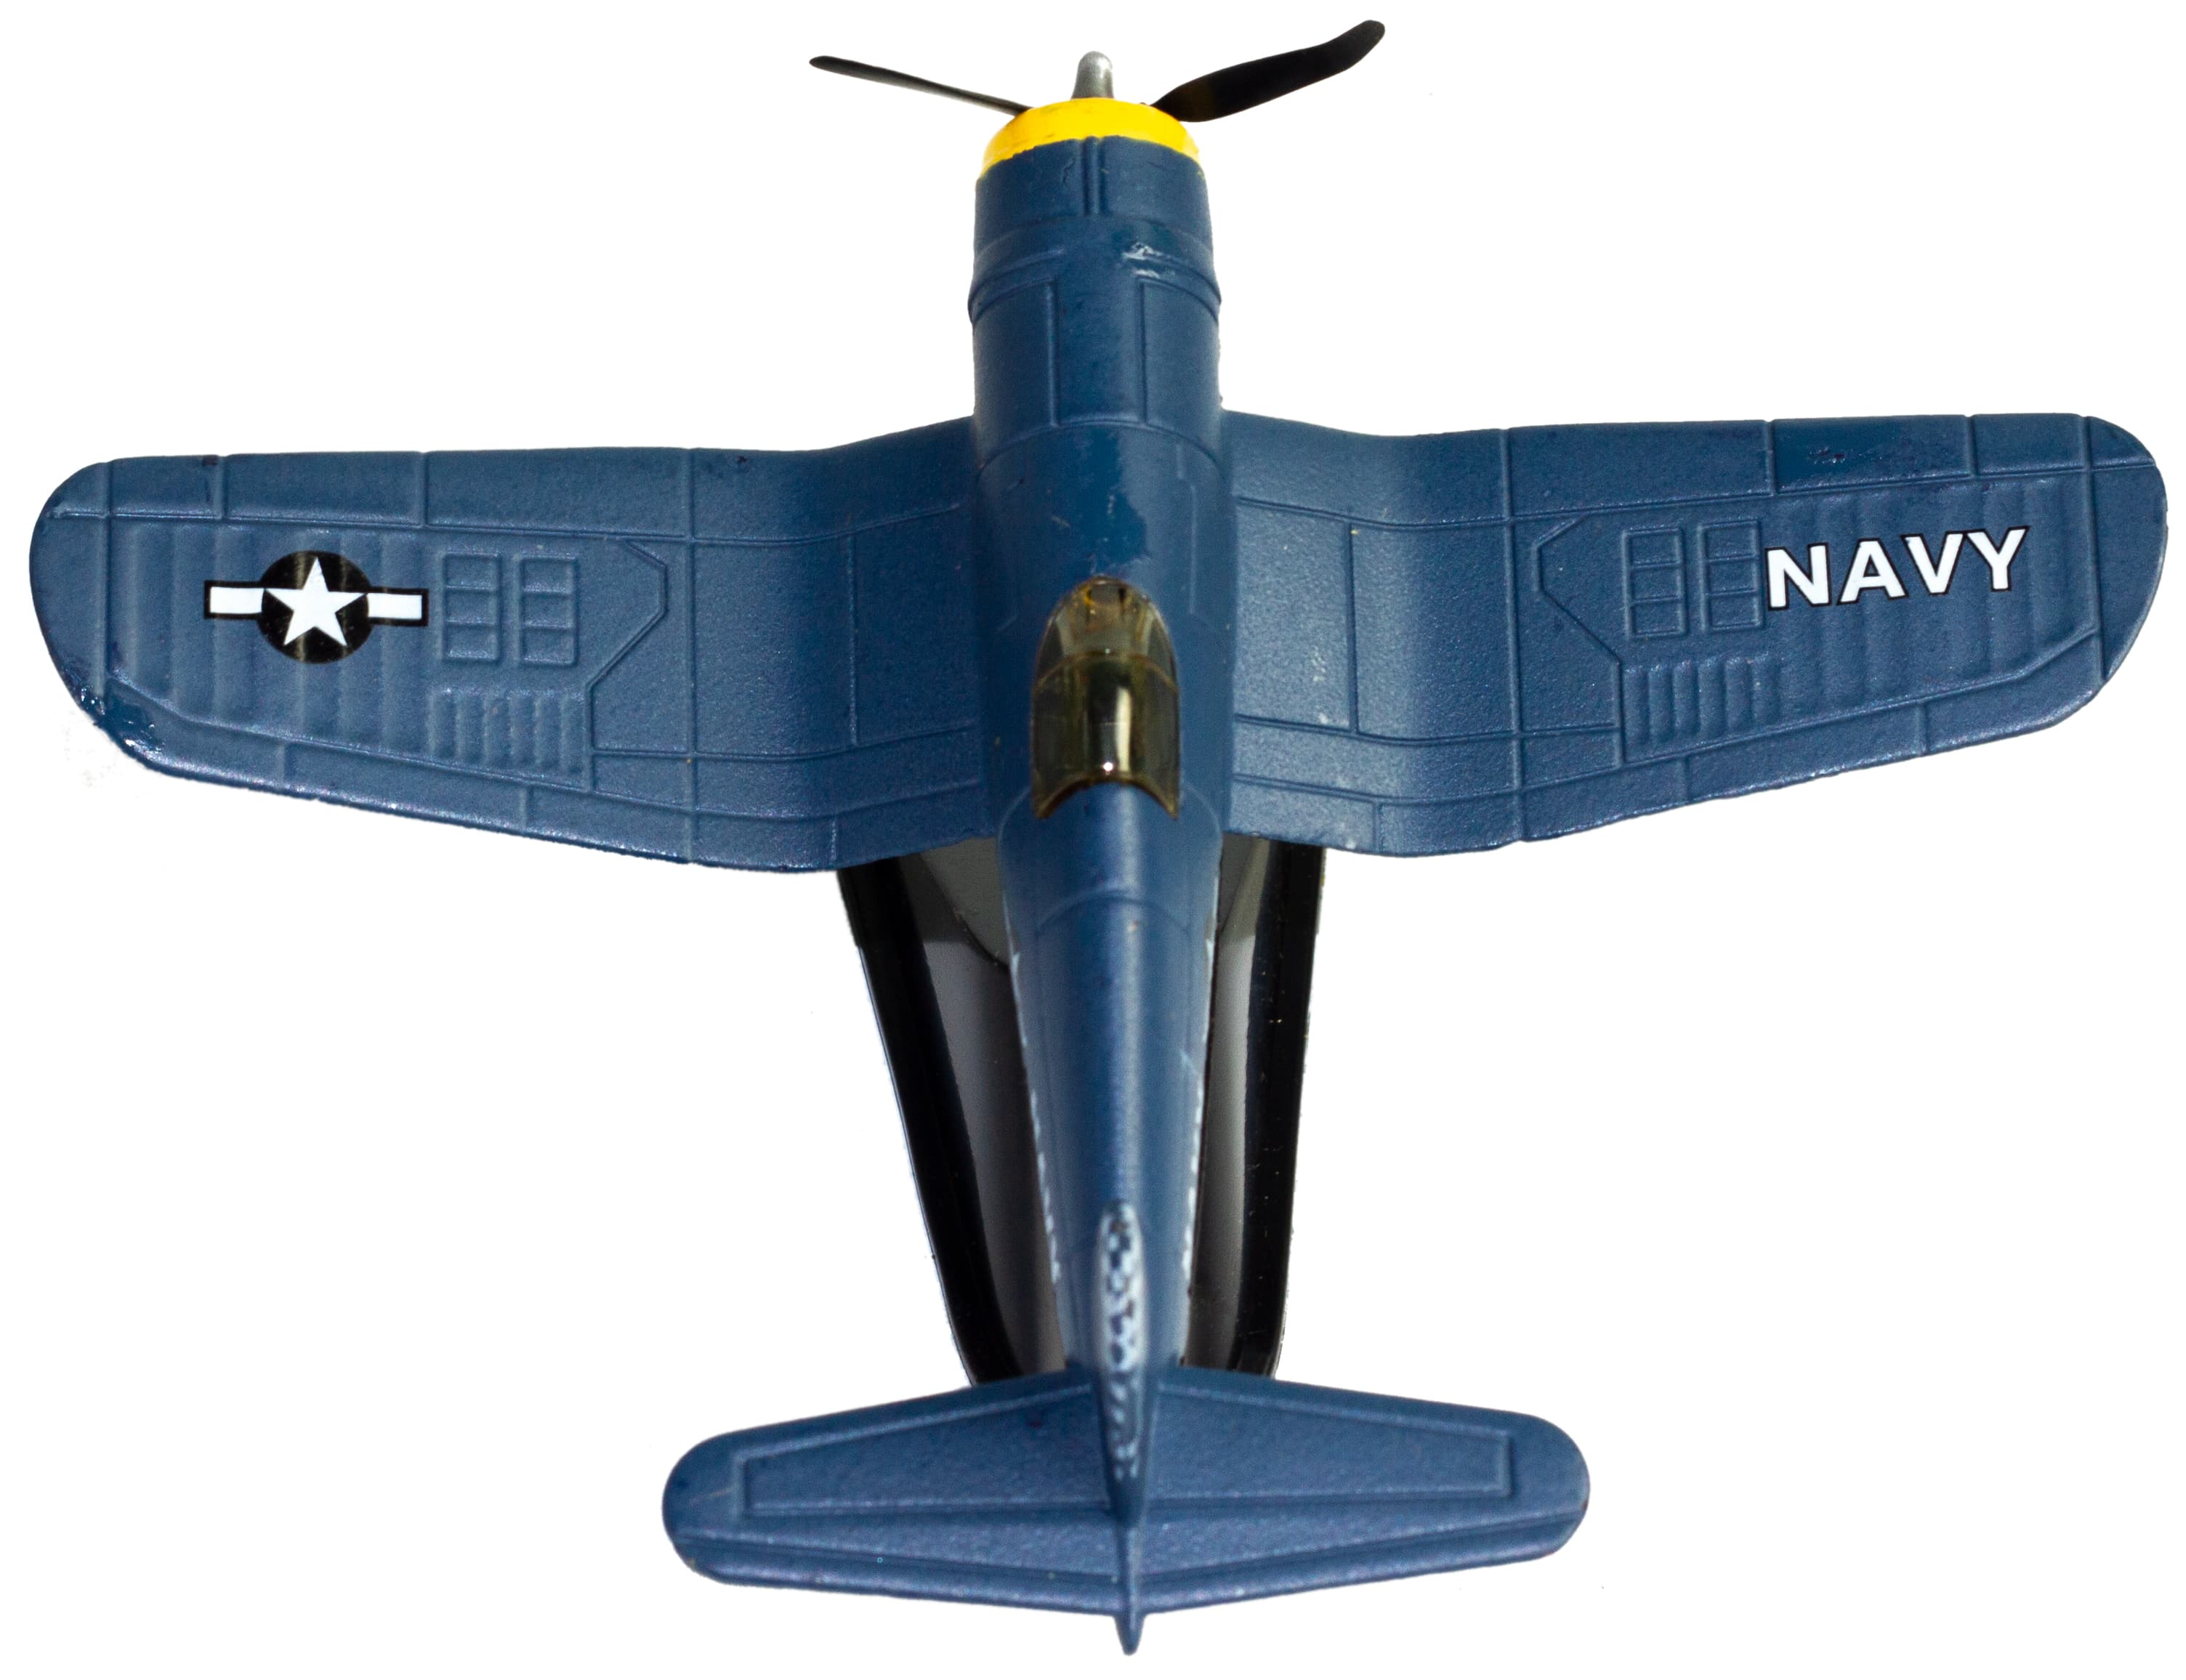 Металлическая модель военного самолета-истребителя «Classic Fighter. Navy» 10 см. F8211012B, винтовой, на подставке / Синий